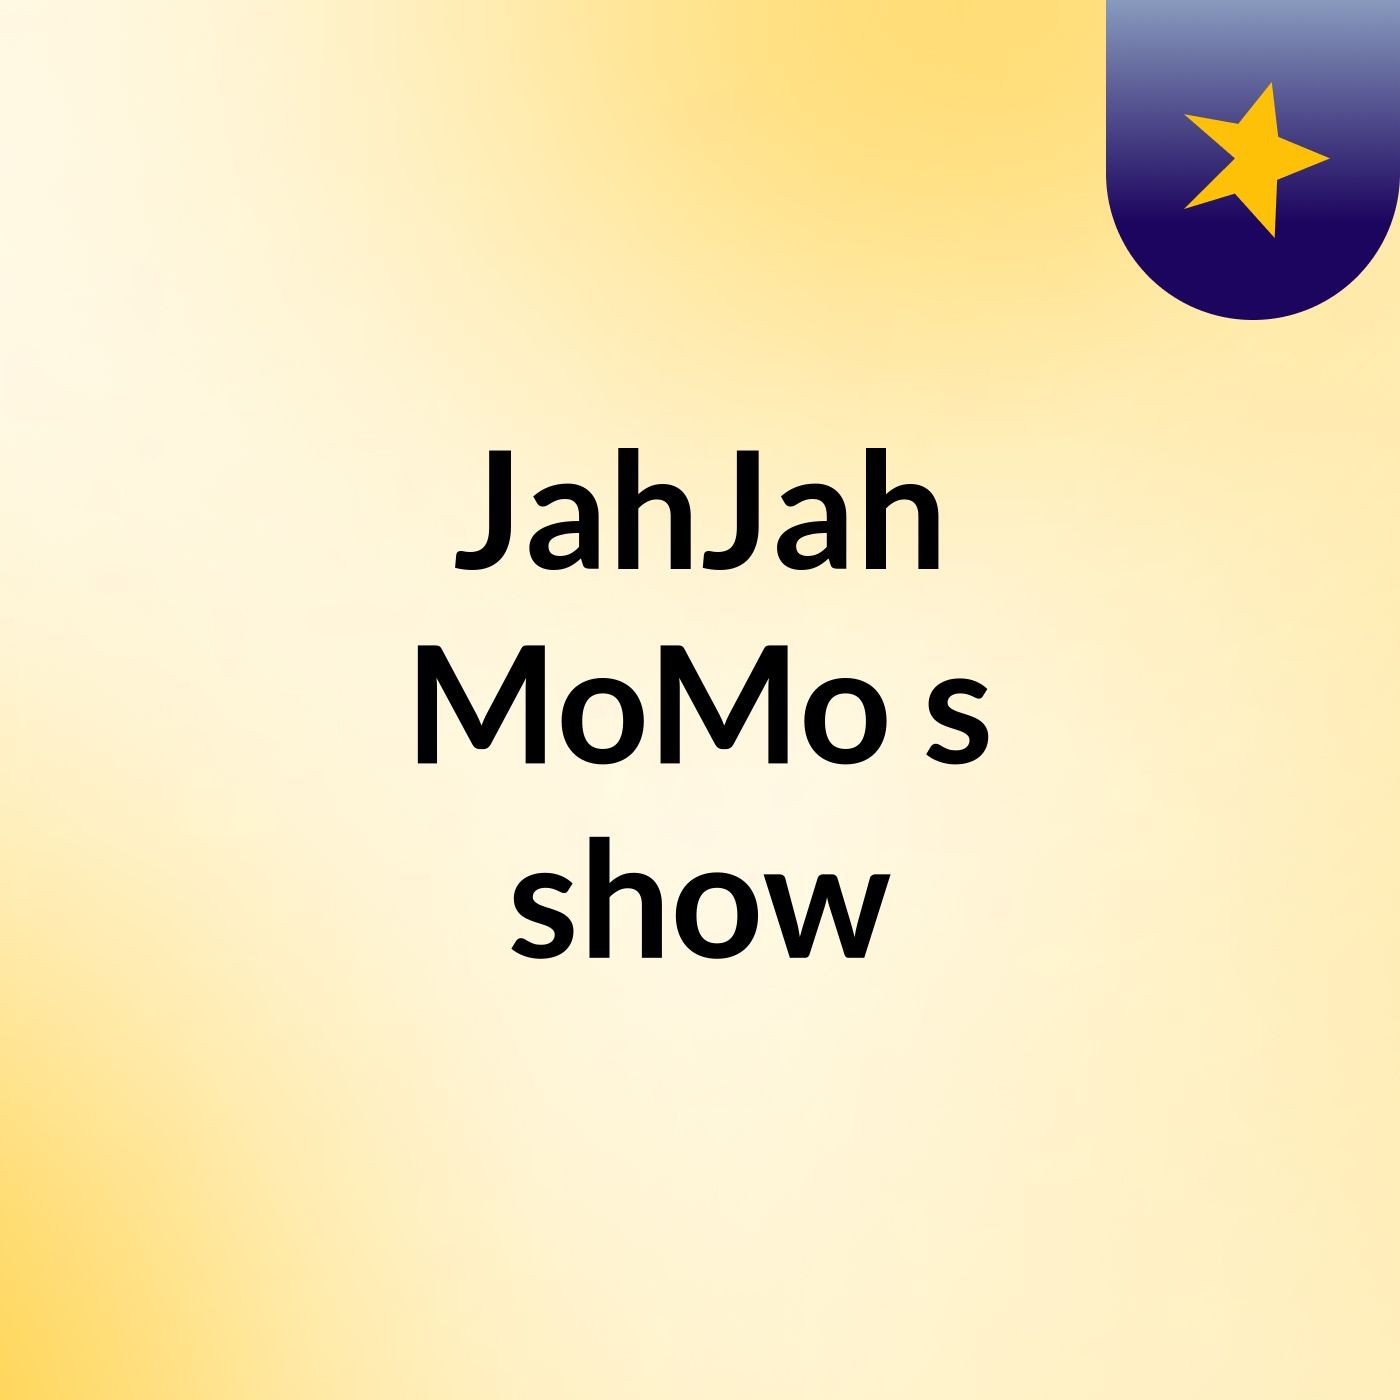 JahJah MoMo's show